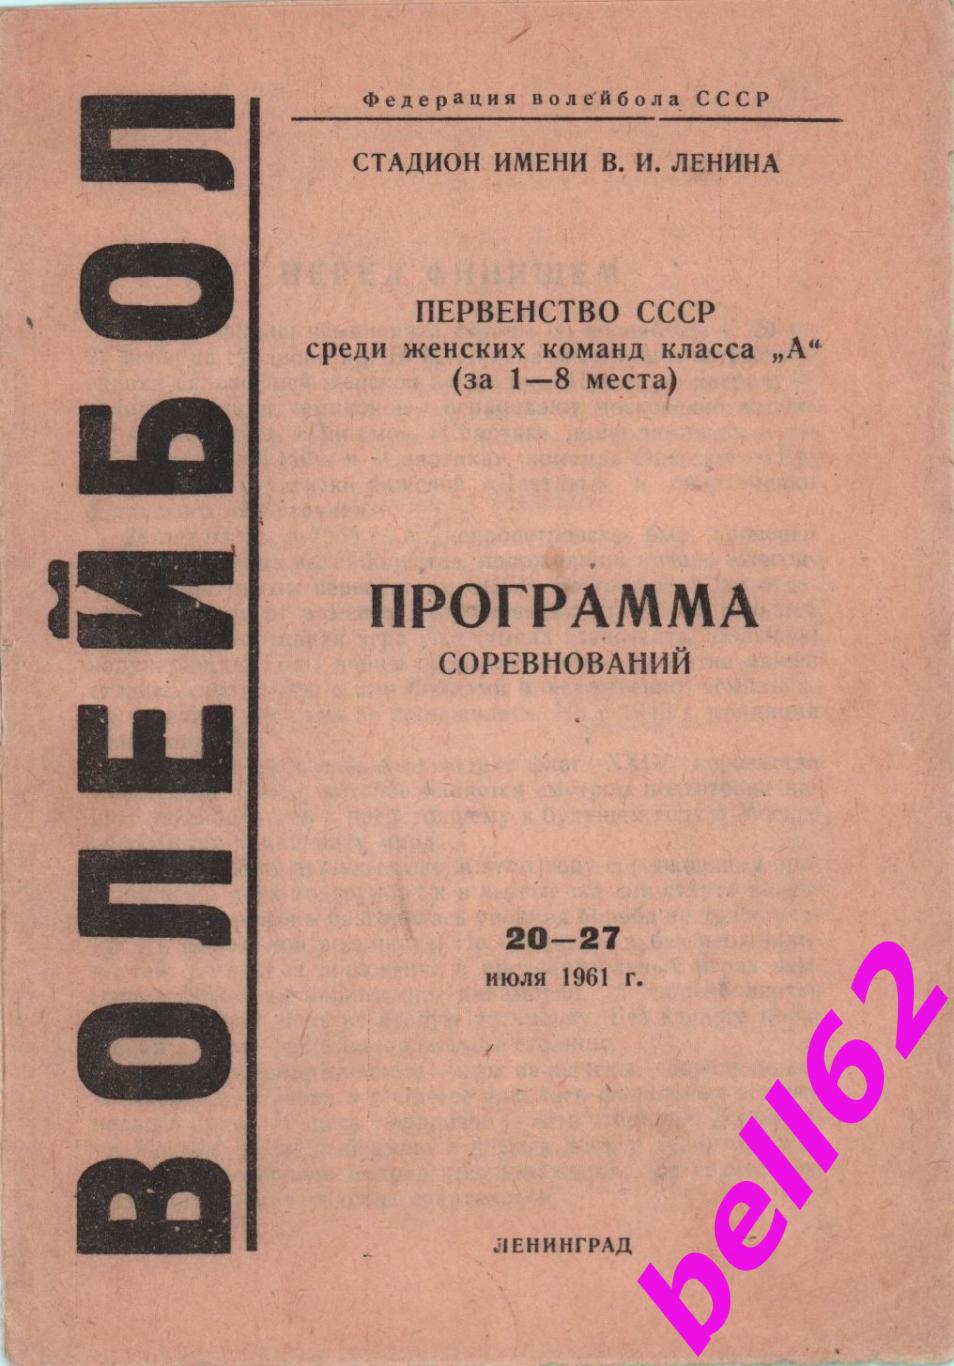 Первенство СССР по волейболу за 1-8 места-20-27.07.1961 г. г. Ленинград.